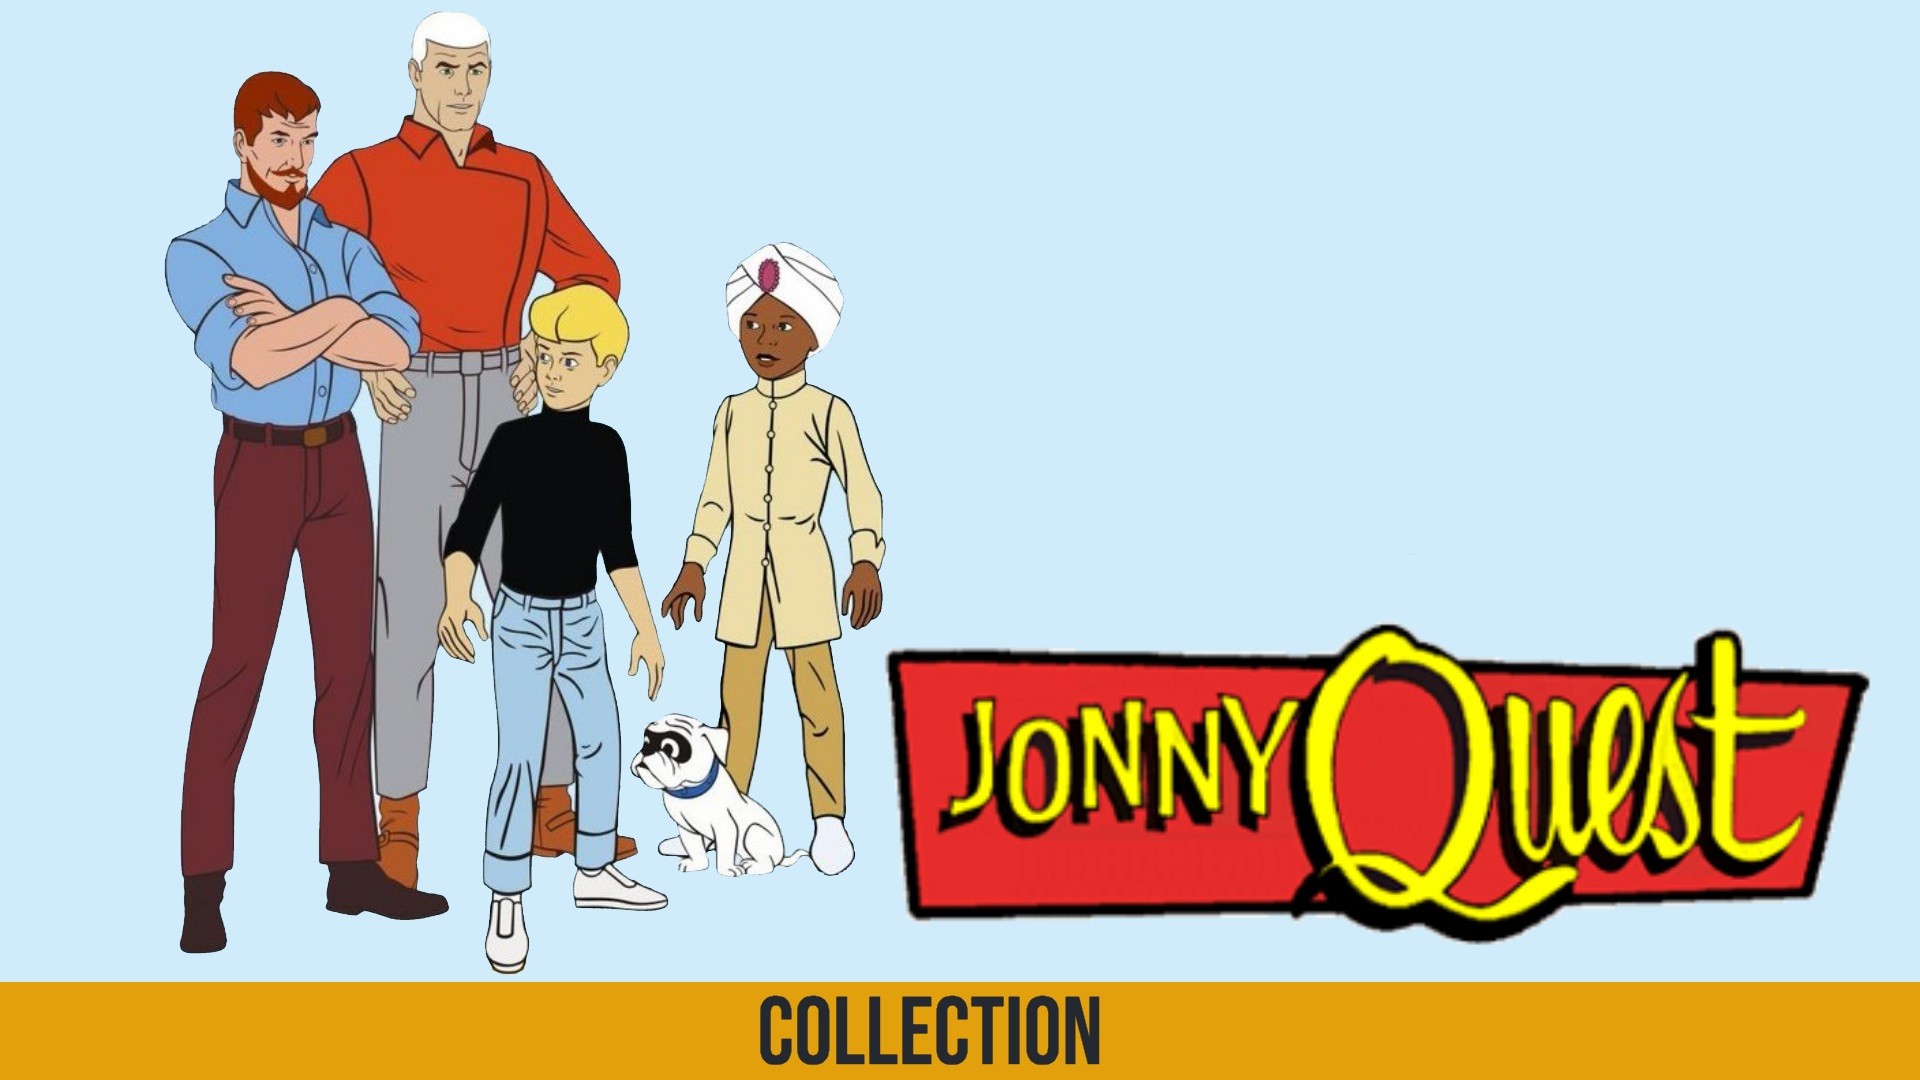 Jonny Quest Background Plex Collection Posters